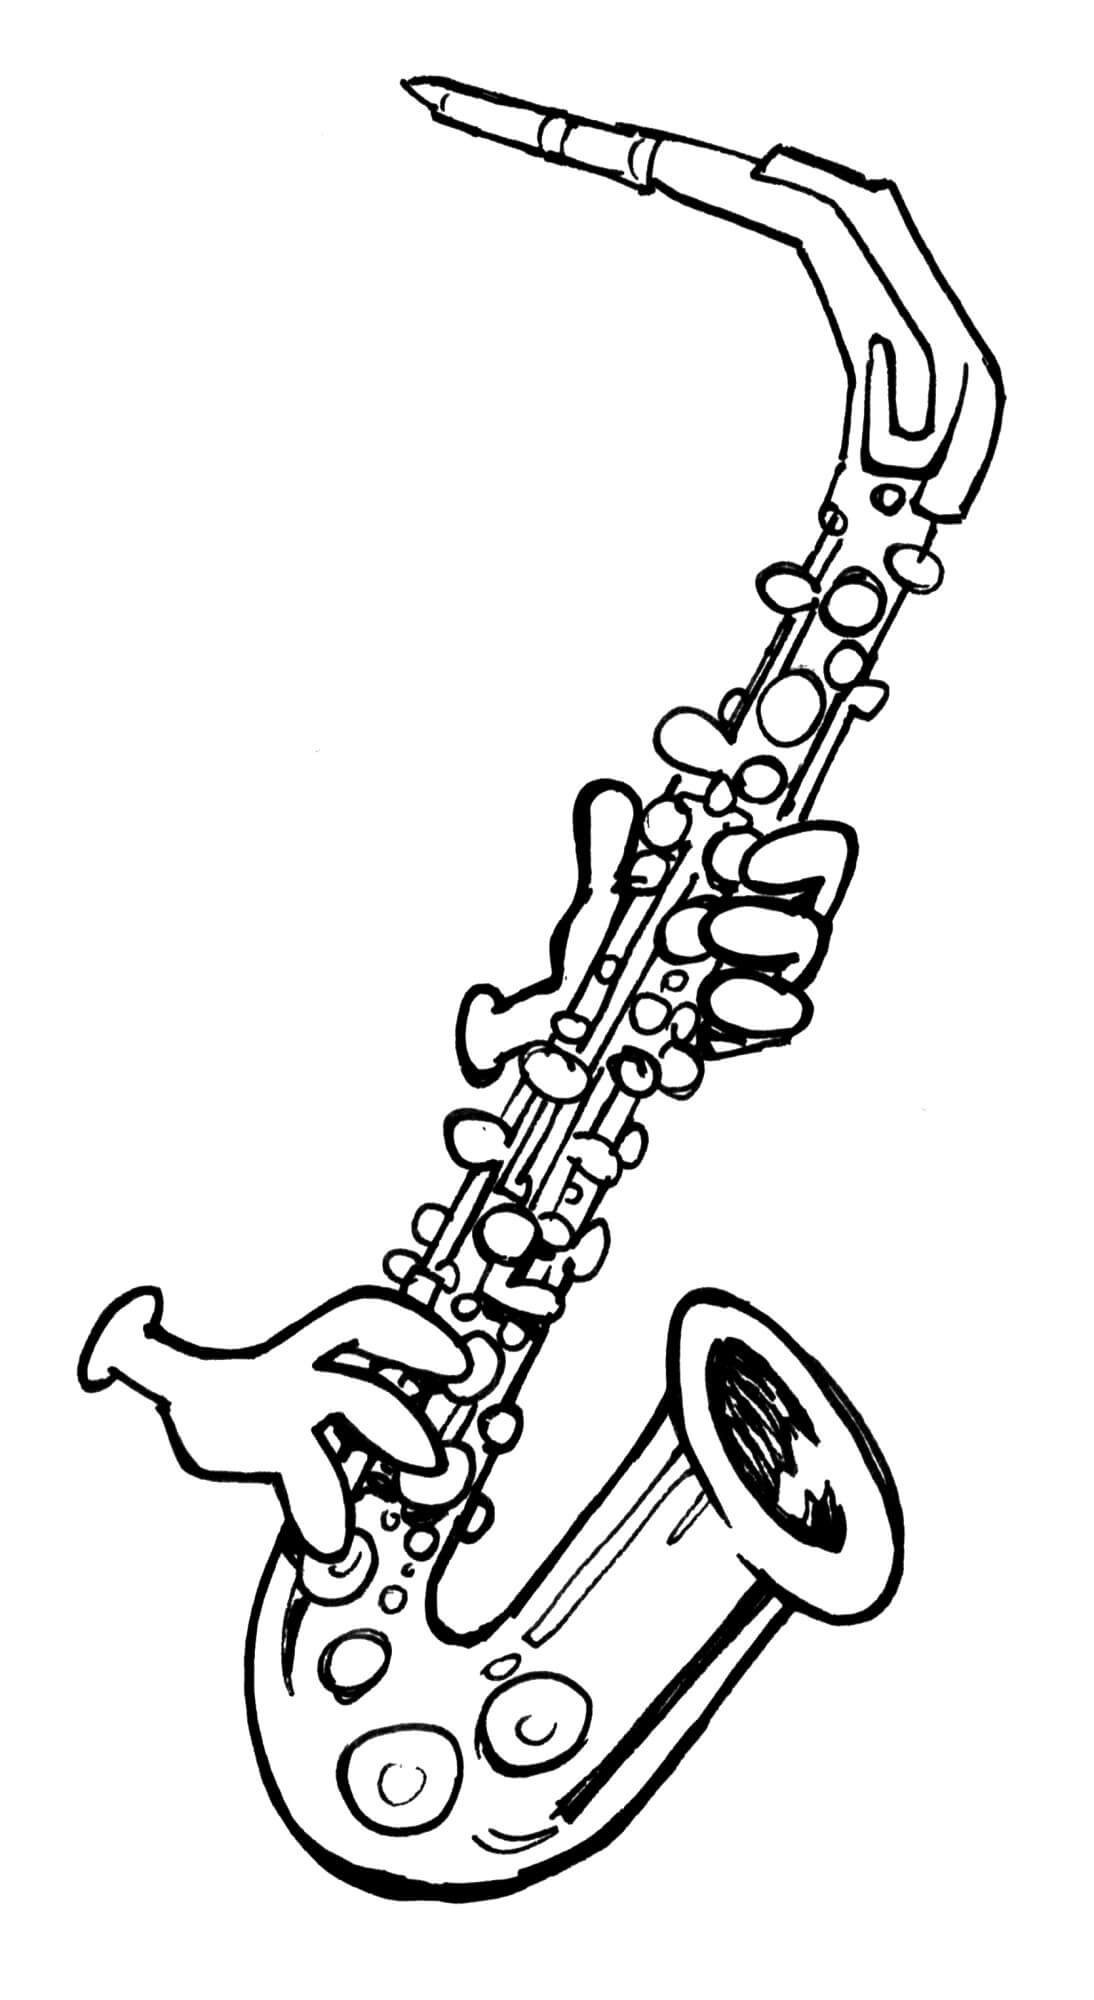 Jouer du Saxophone coloring page